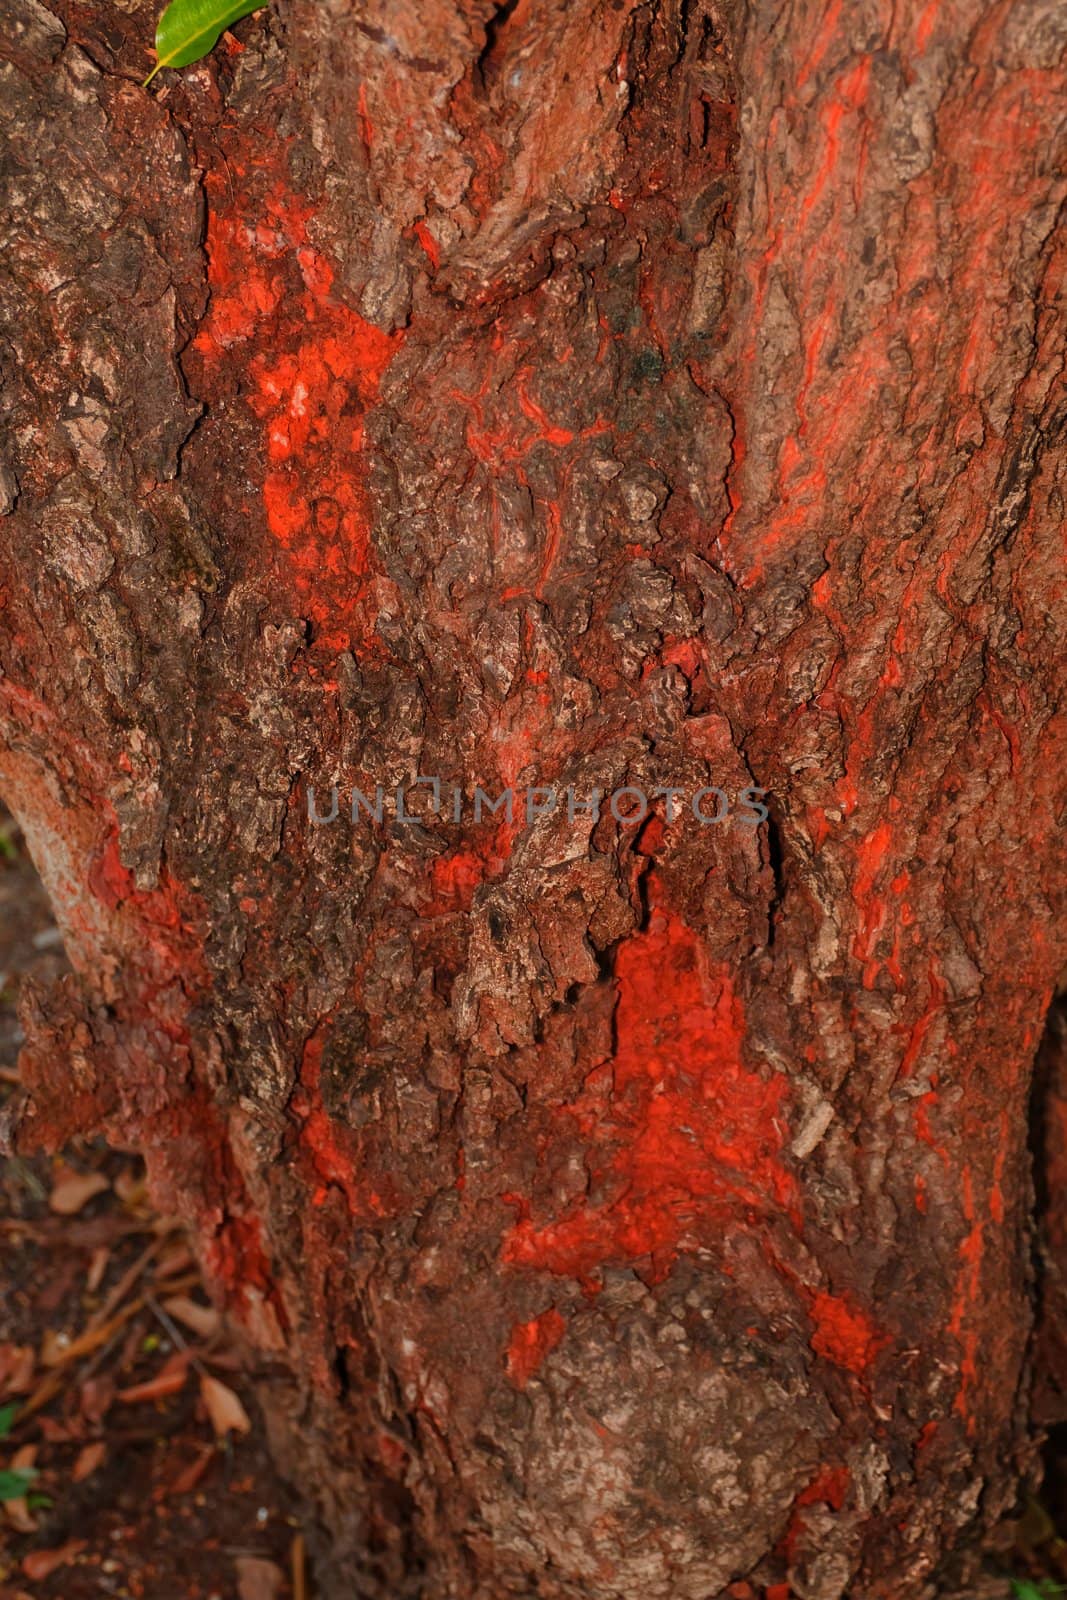 Tree bark, dry parts of the tree